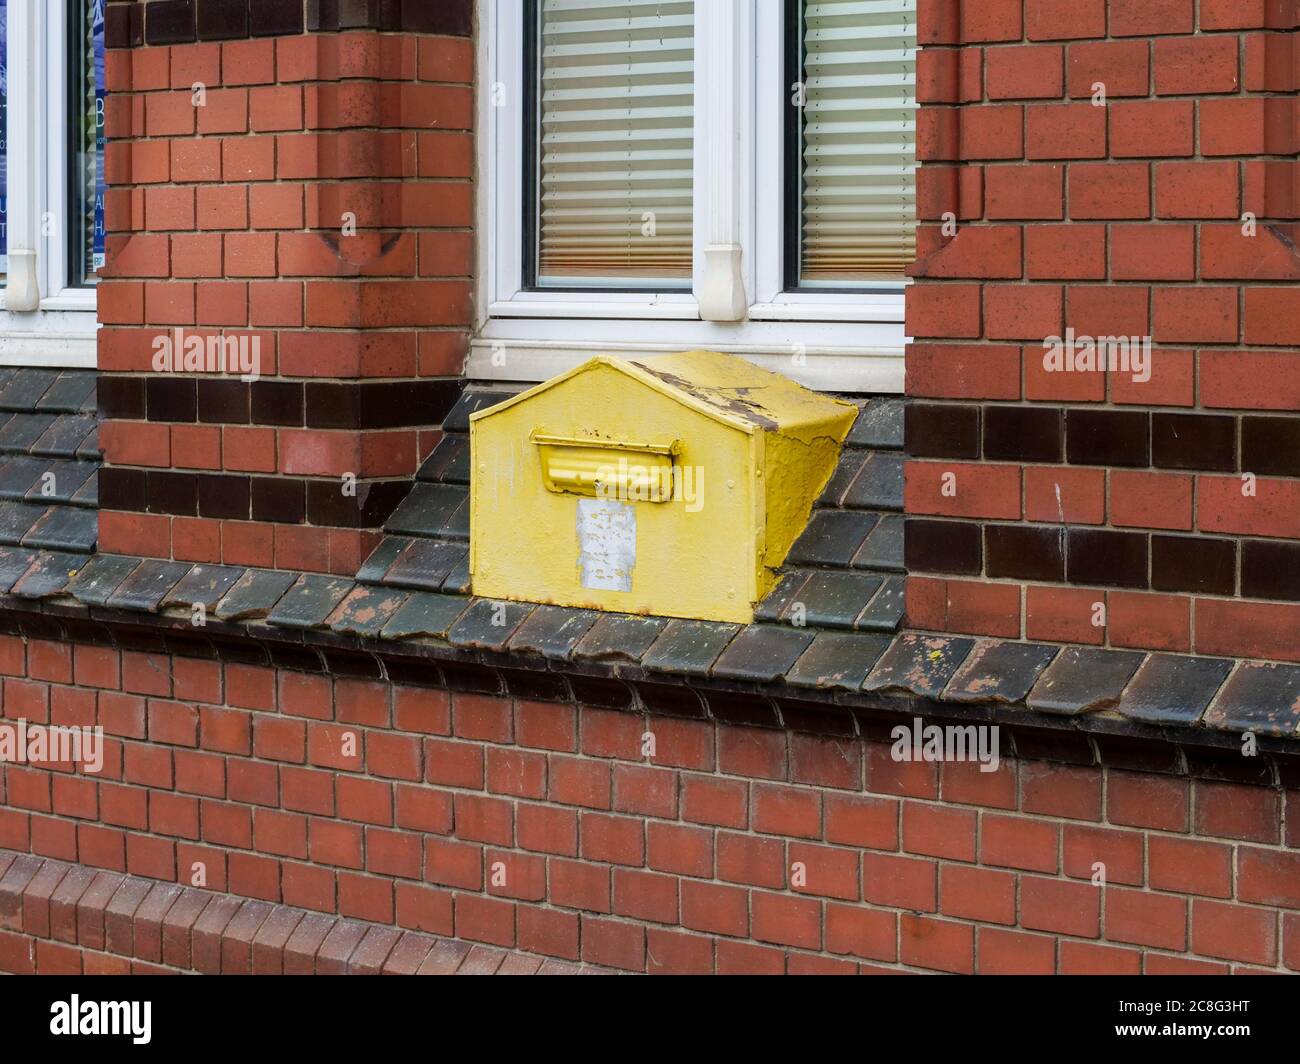 In eine Wand eingemauerter gelber Briefkasten alt DDR deutscher Postbriefkasten Rügen Sassnitz rostiger GDR Post-Briefkasten von früher damals Foto Stock